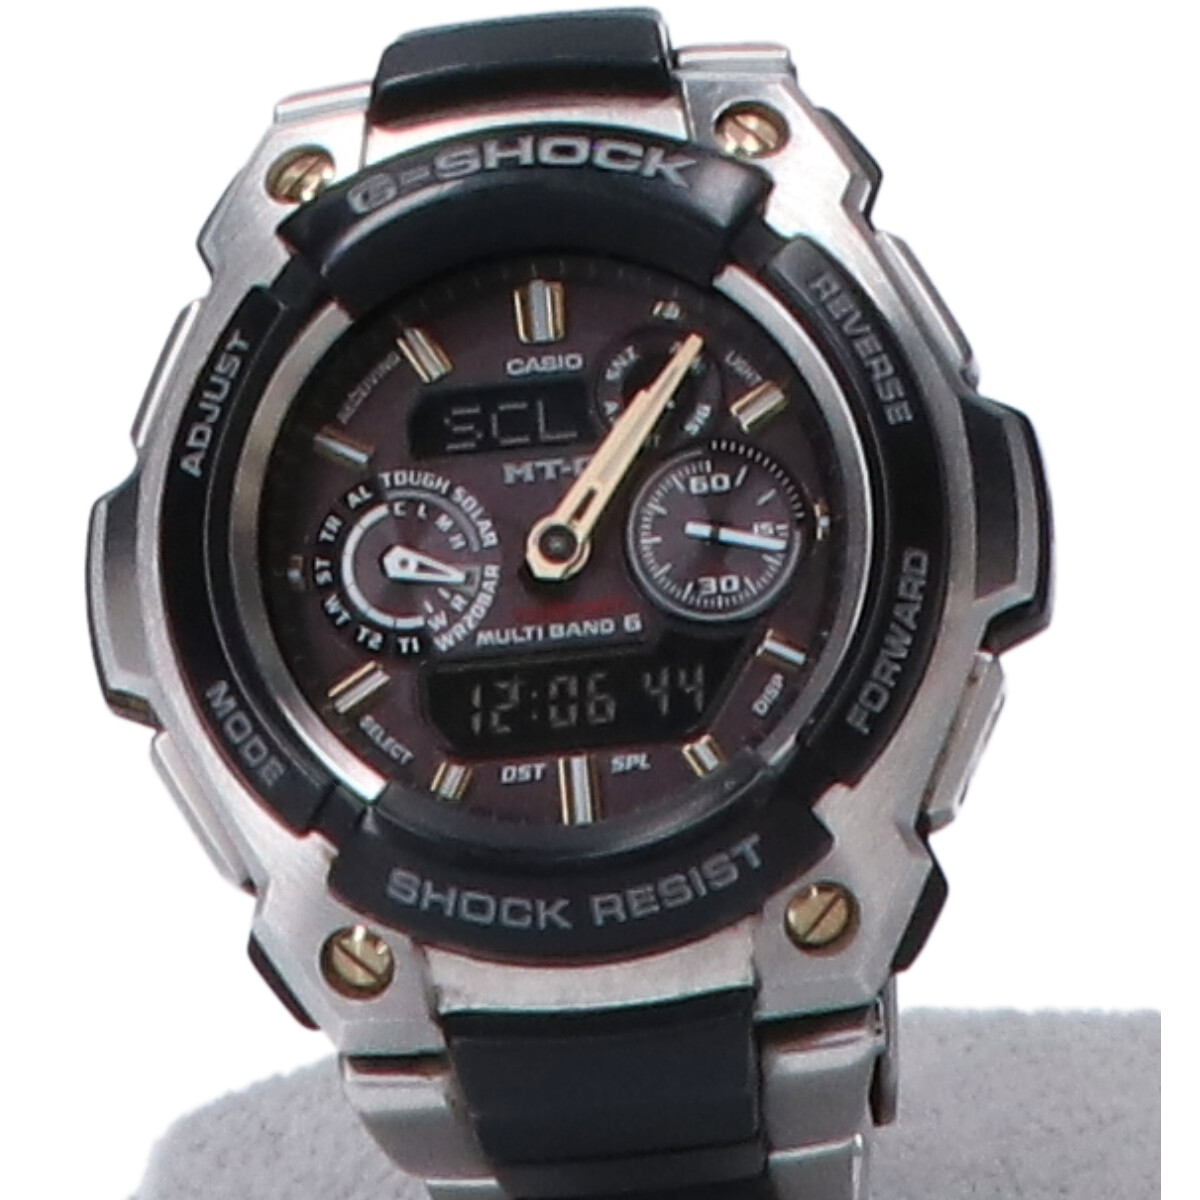 ジーショックのMTG-1500-1AJF MT-G マルチバンド6 タフソーラー電波腕時計の買取実績です。